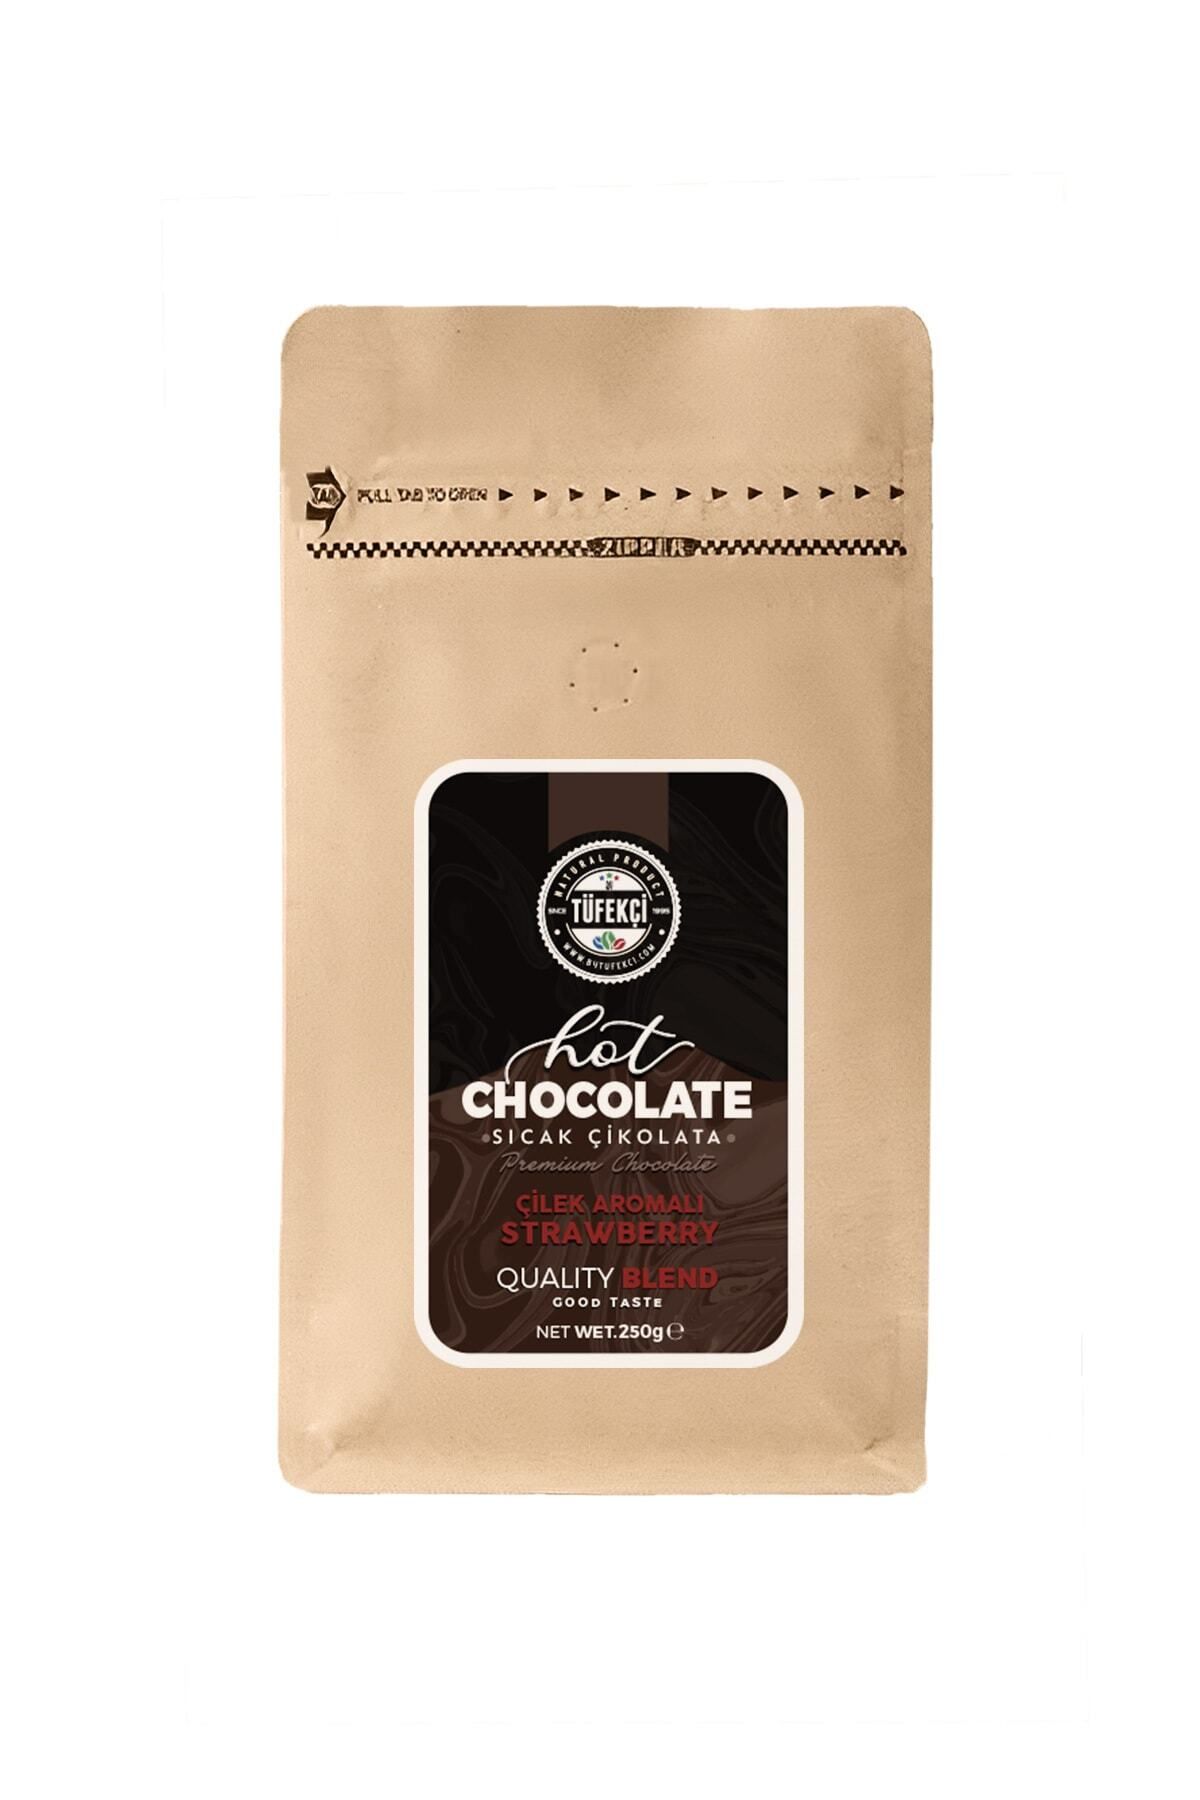 By Tüfekçi Çilek Aromalı Sıcak Çikolata Gerçek Şeker Yüksek Kakao 10 Bardak 250 gr